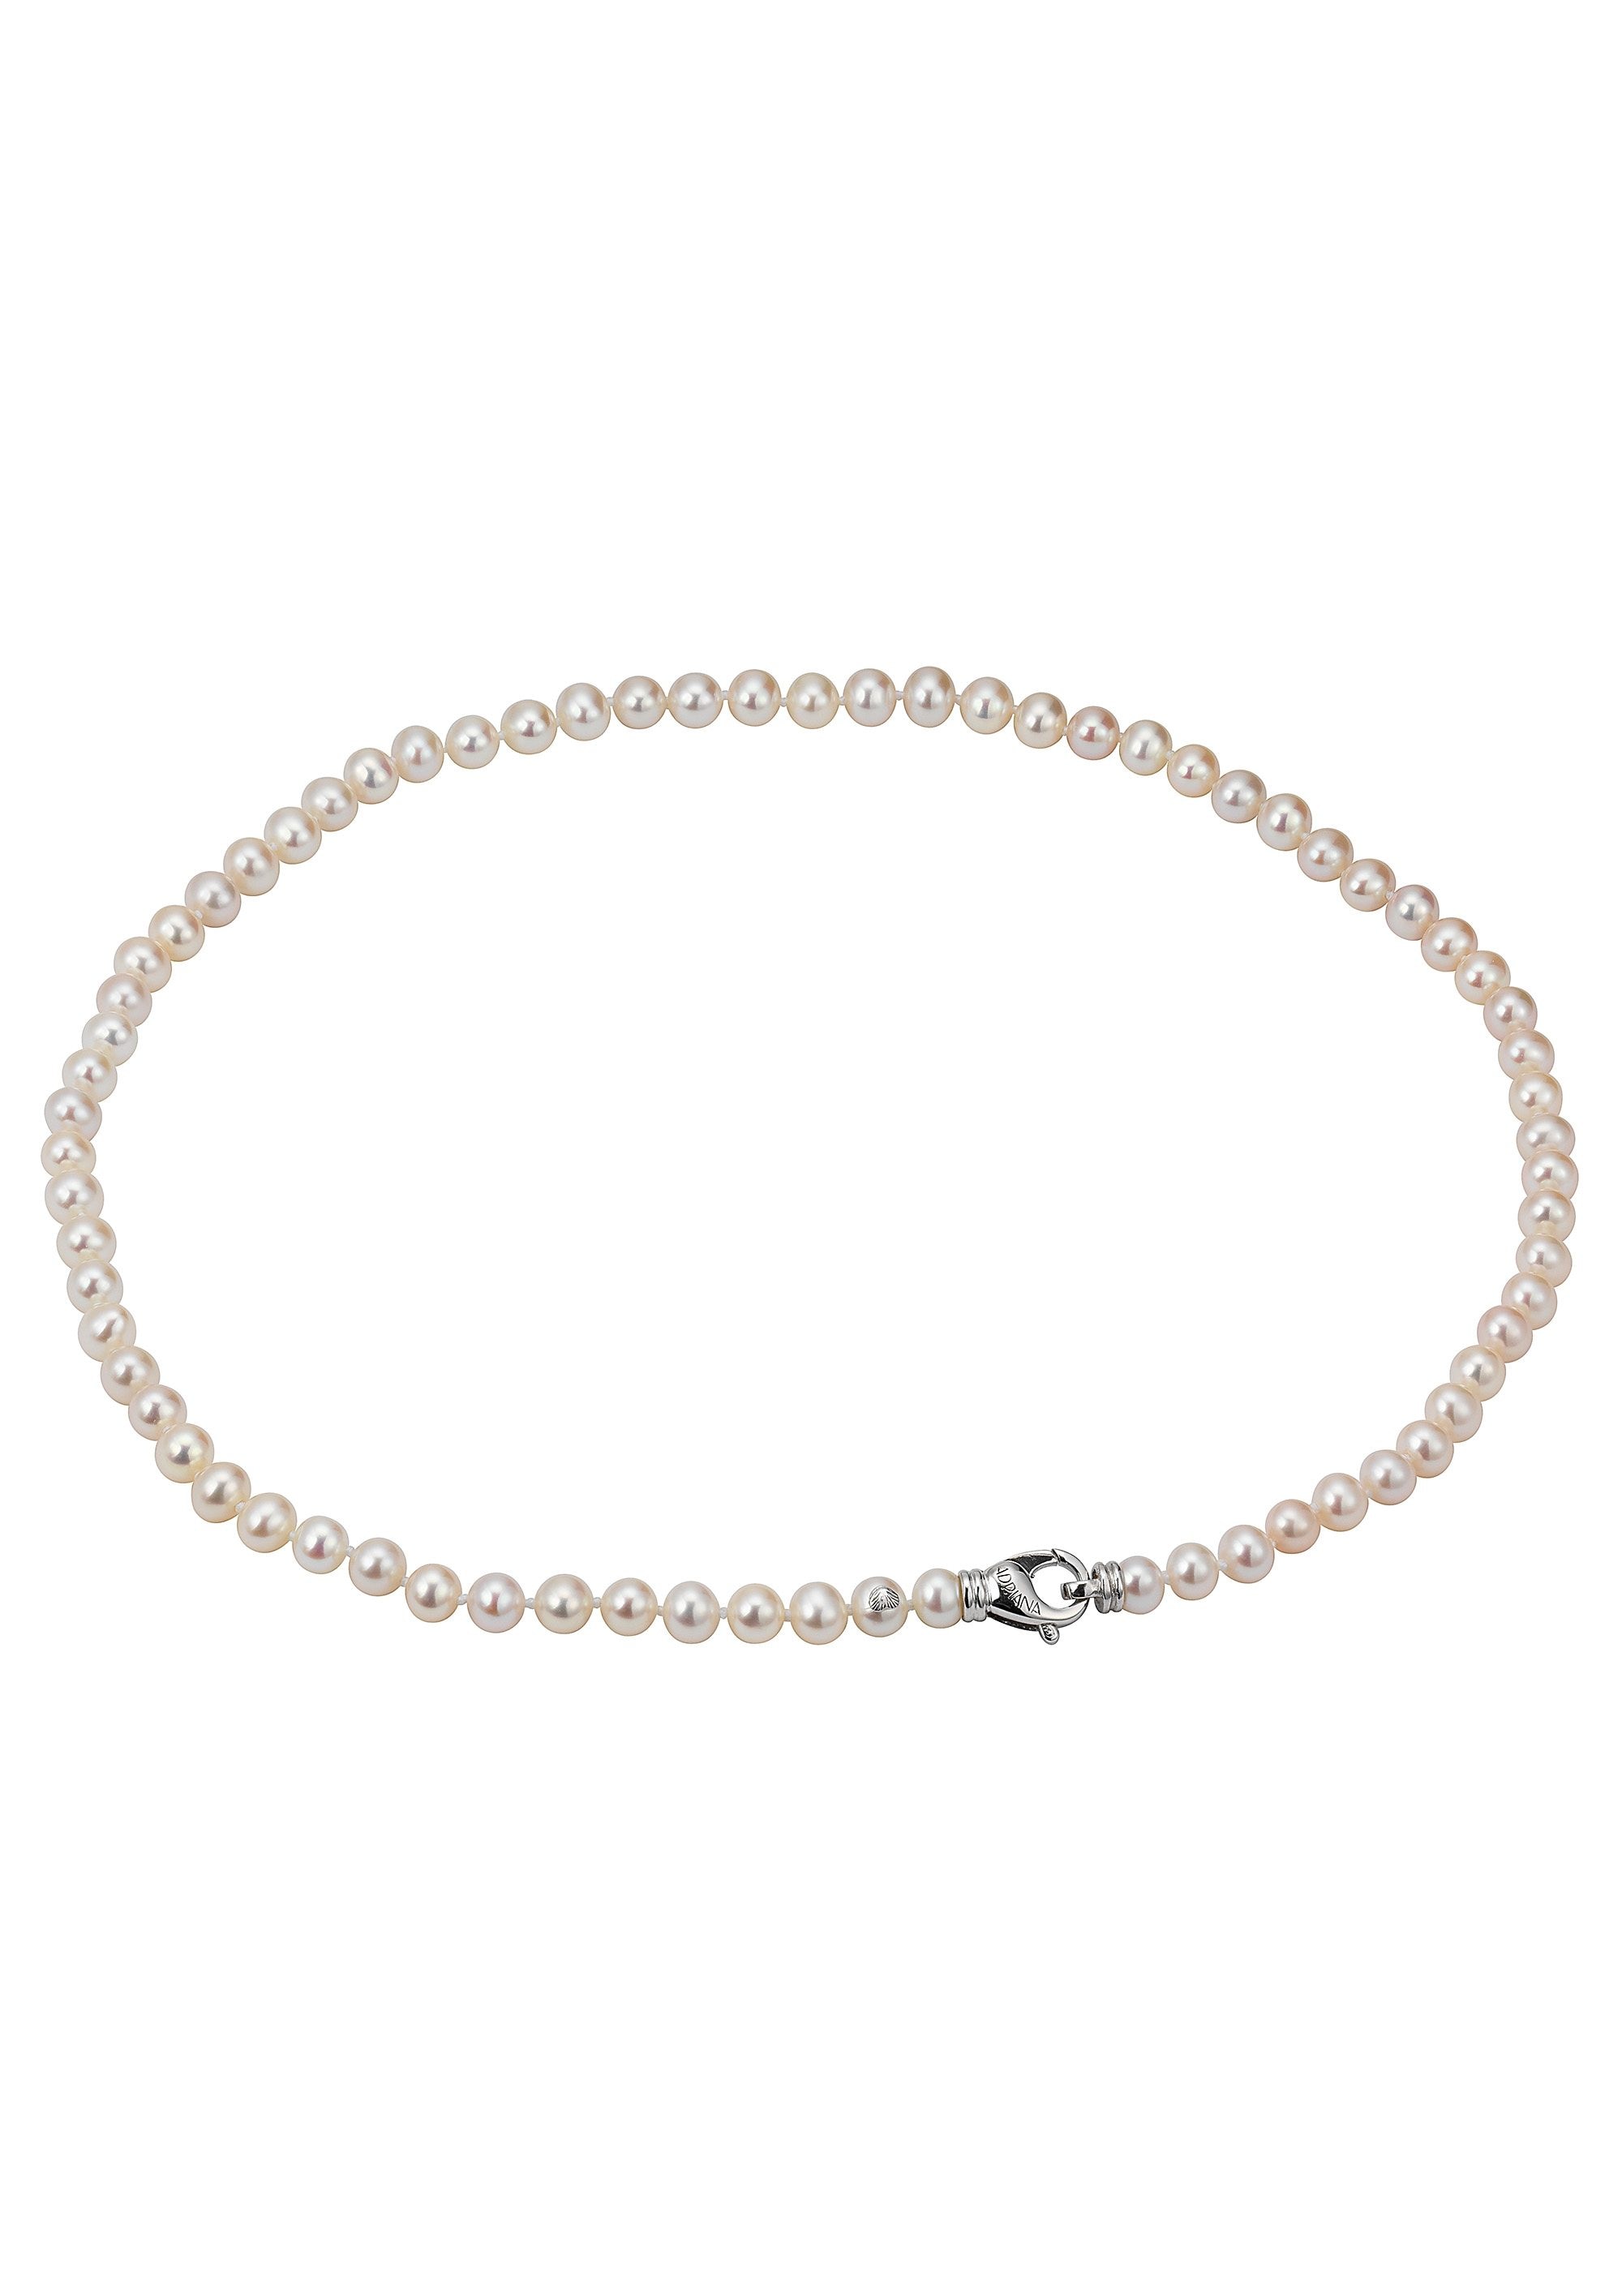 R4« Perlenkette R5.1 Adriana perla mia R2.1 mit Süßwasserzuchtperlen »La